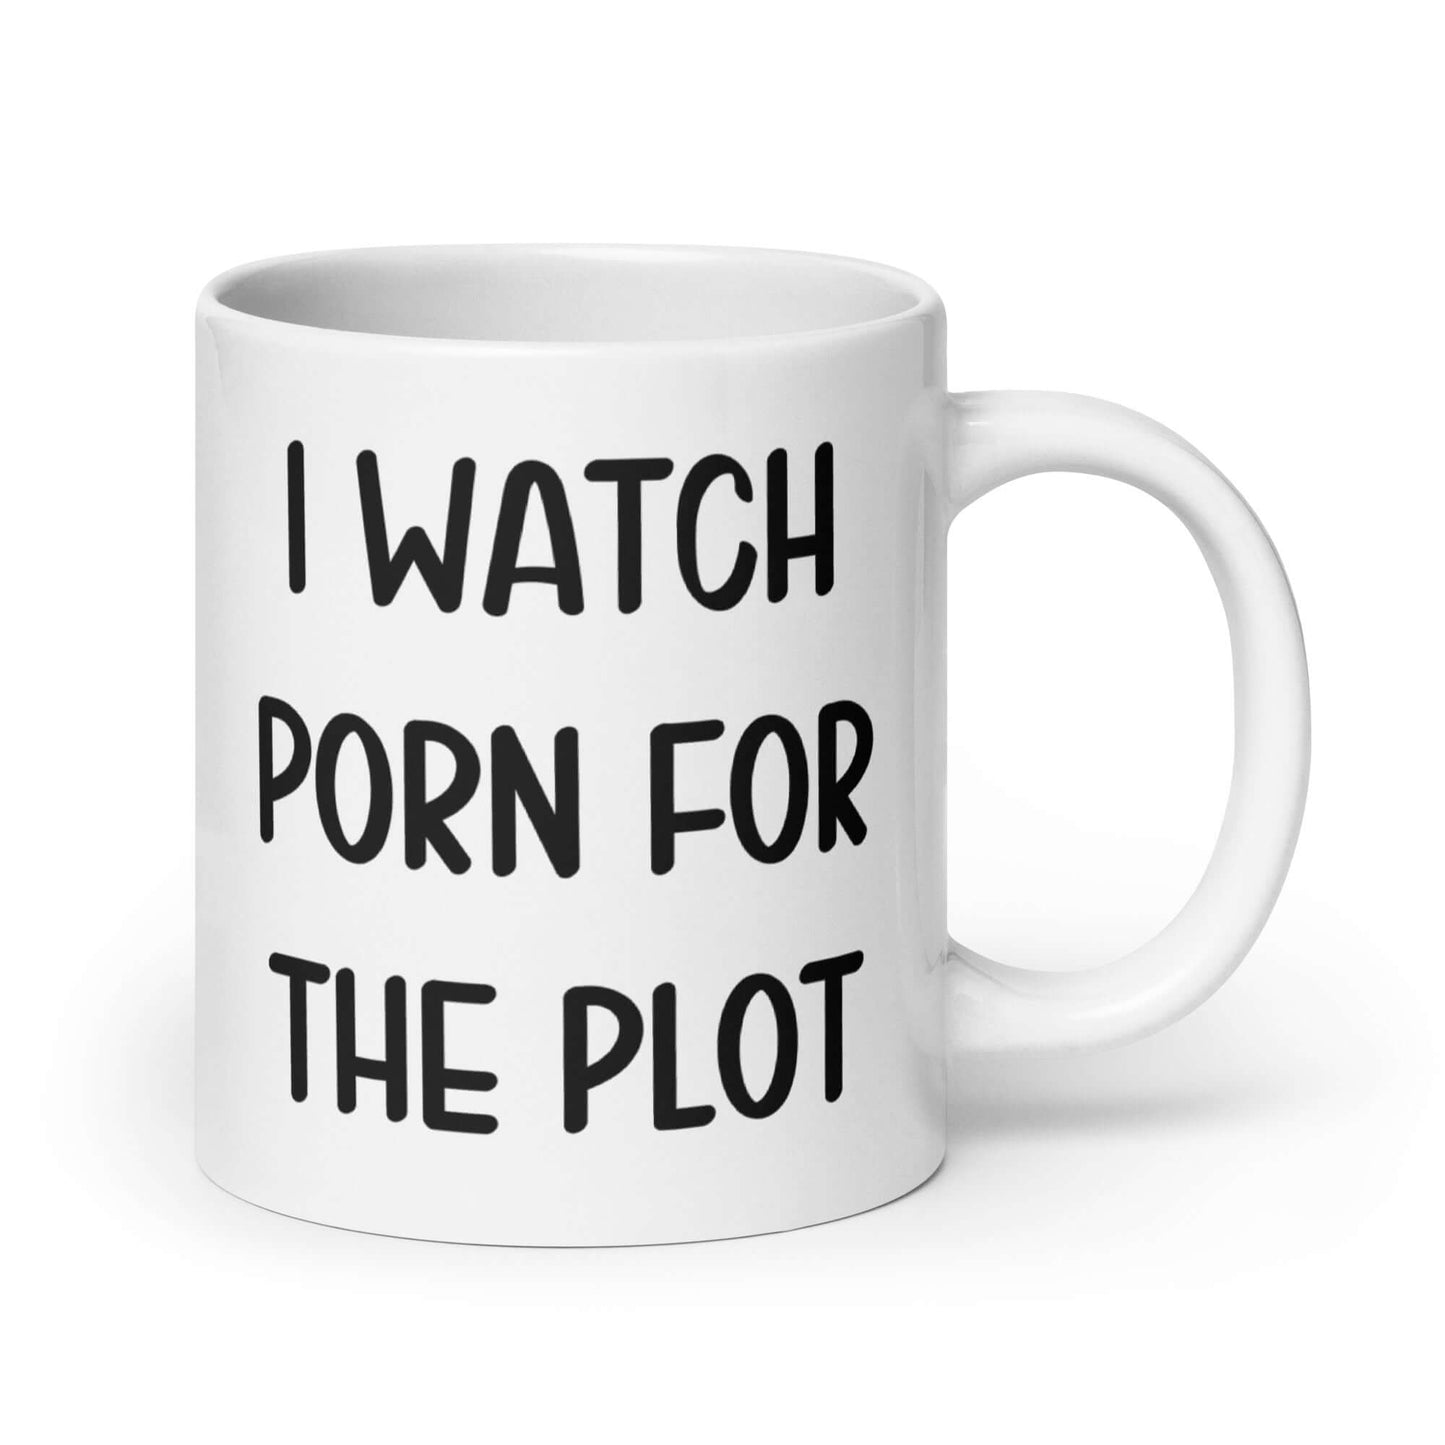 I watch porn for the plot funny ceramic mug